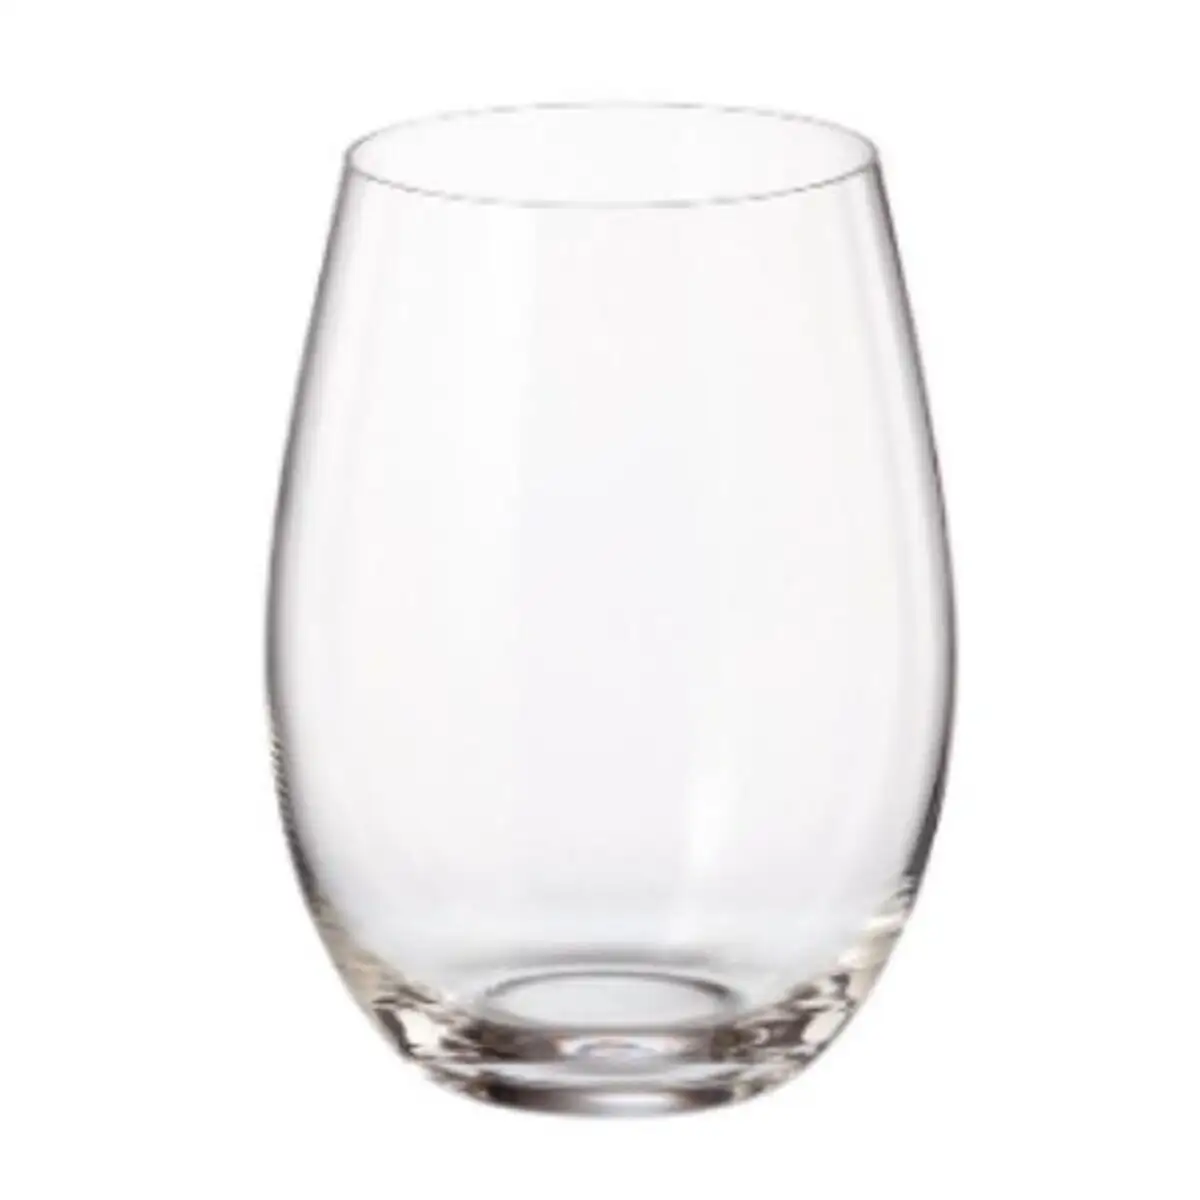 Set de verres bohemia crystal clara 560 ml verre 6 unites_2533. DIAYTAR SENEGAL - Là où la Beauté Rencontre la Fonctionnalité. Parcourez notre sélection pour trouver des produits qui allient esthétique et praticité, pour un quotidien sublimé.